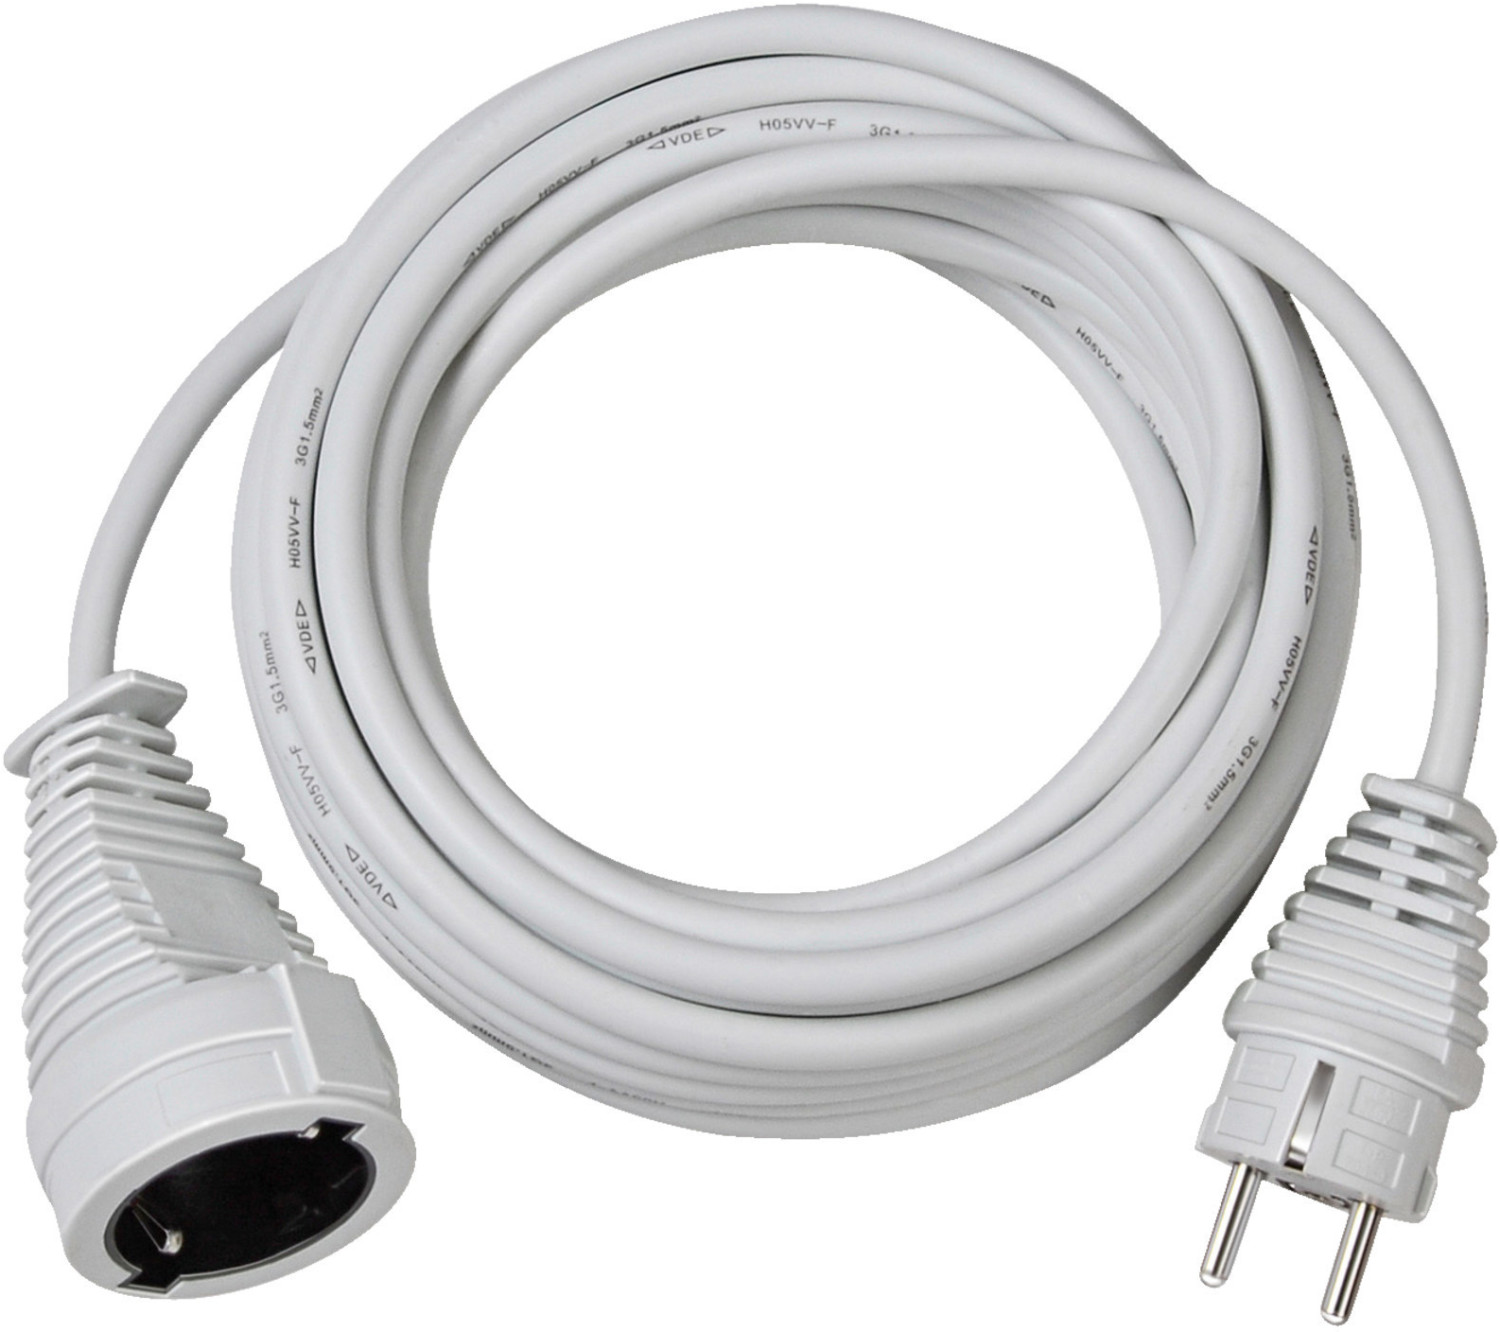 Rallonge électrique 10m H05VV-F 3G1,5 blanc